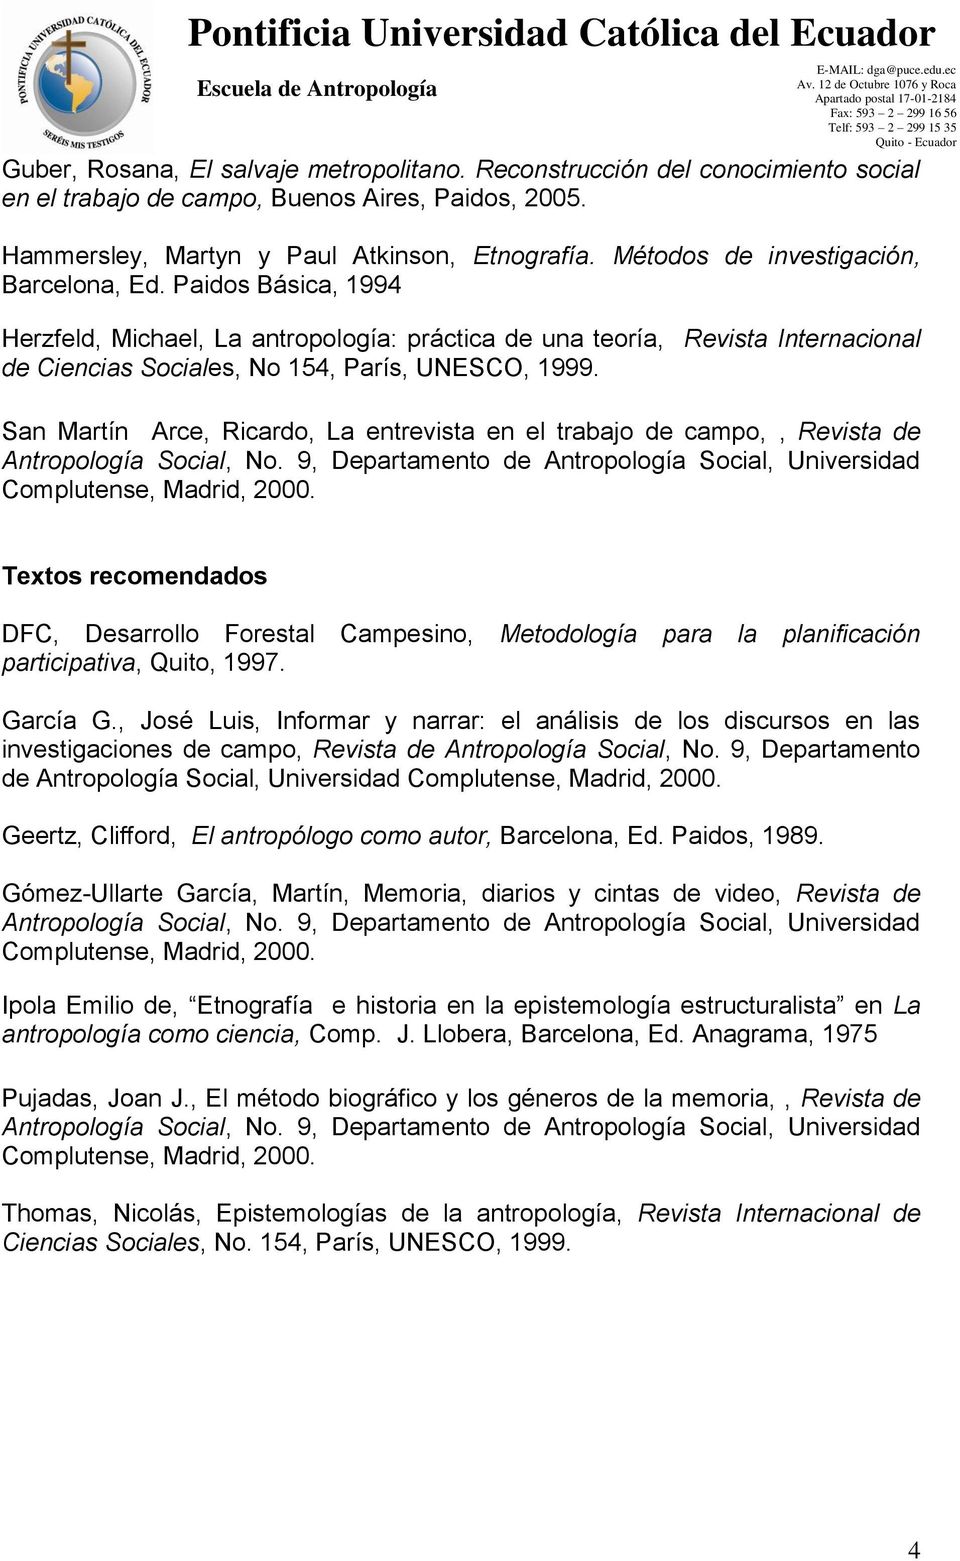 San Martín Arce, Ricardo, La entrevista en el trabajo de campo,, Revista de Antropología Social, No. 9, Departamento de Antropología Social, Universidad Complutense, Madrid, 2000.